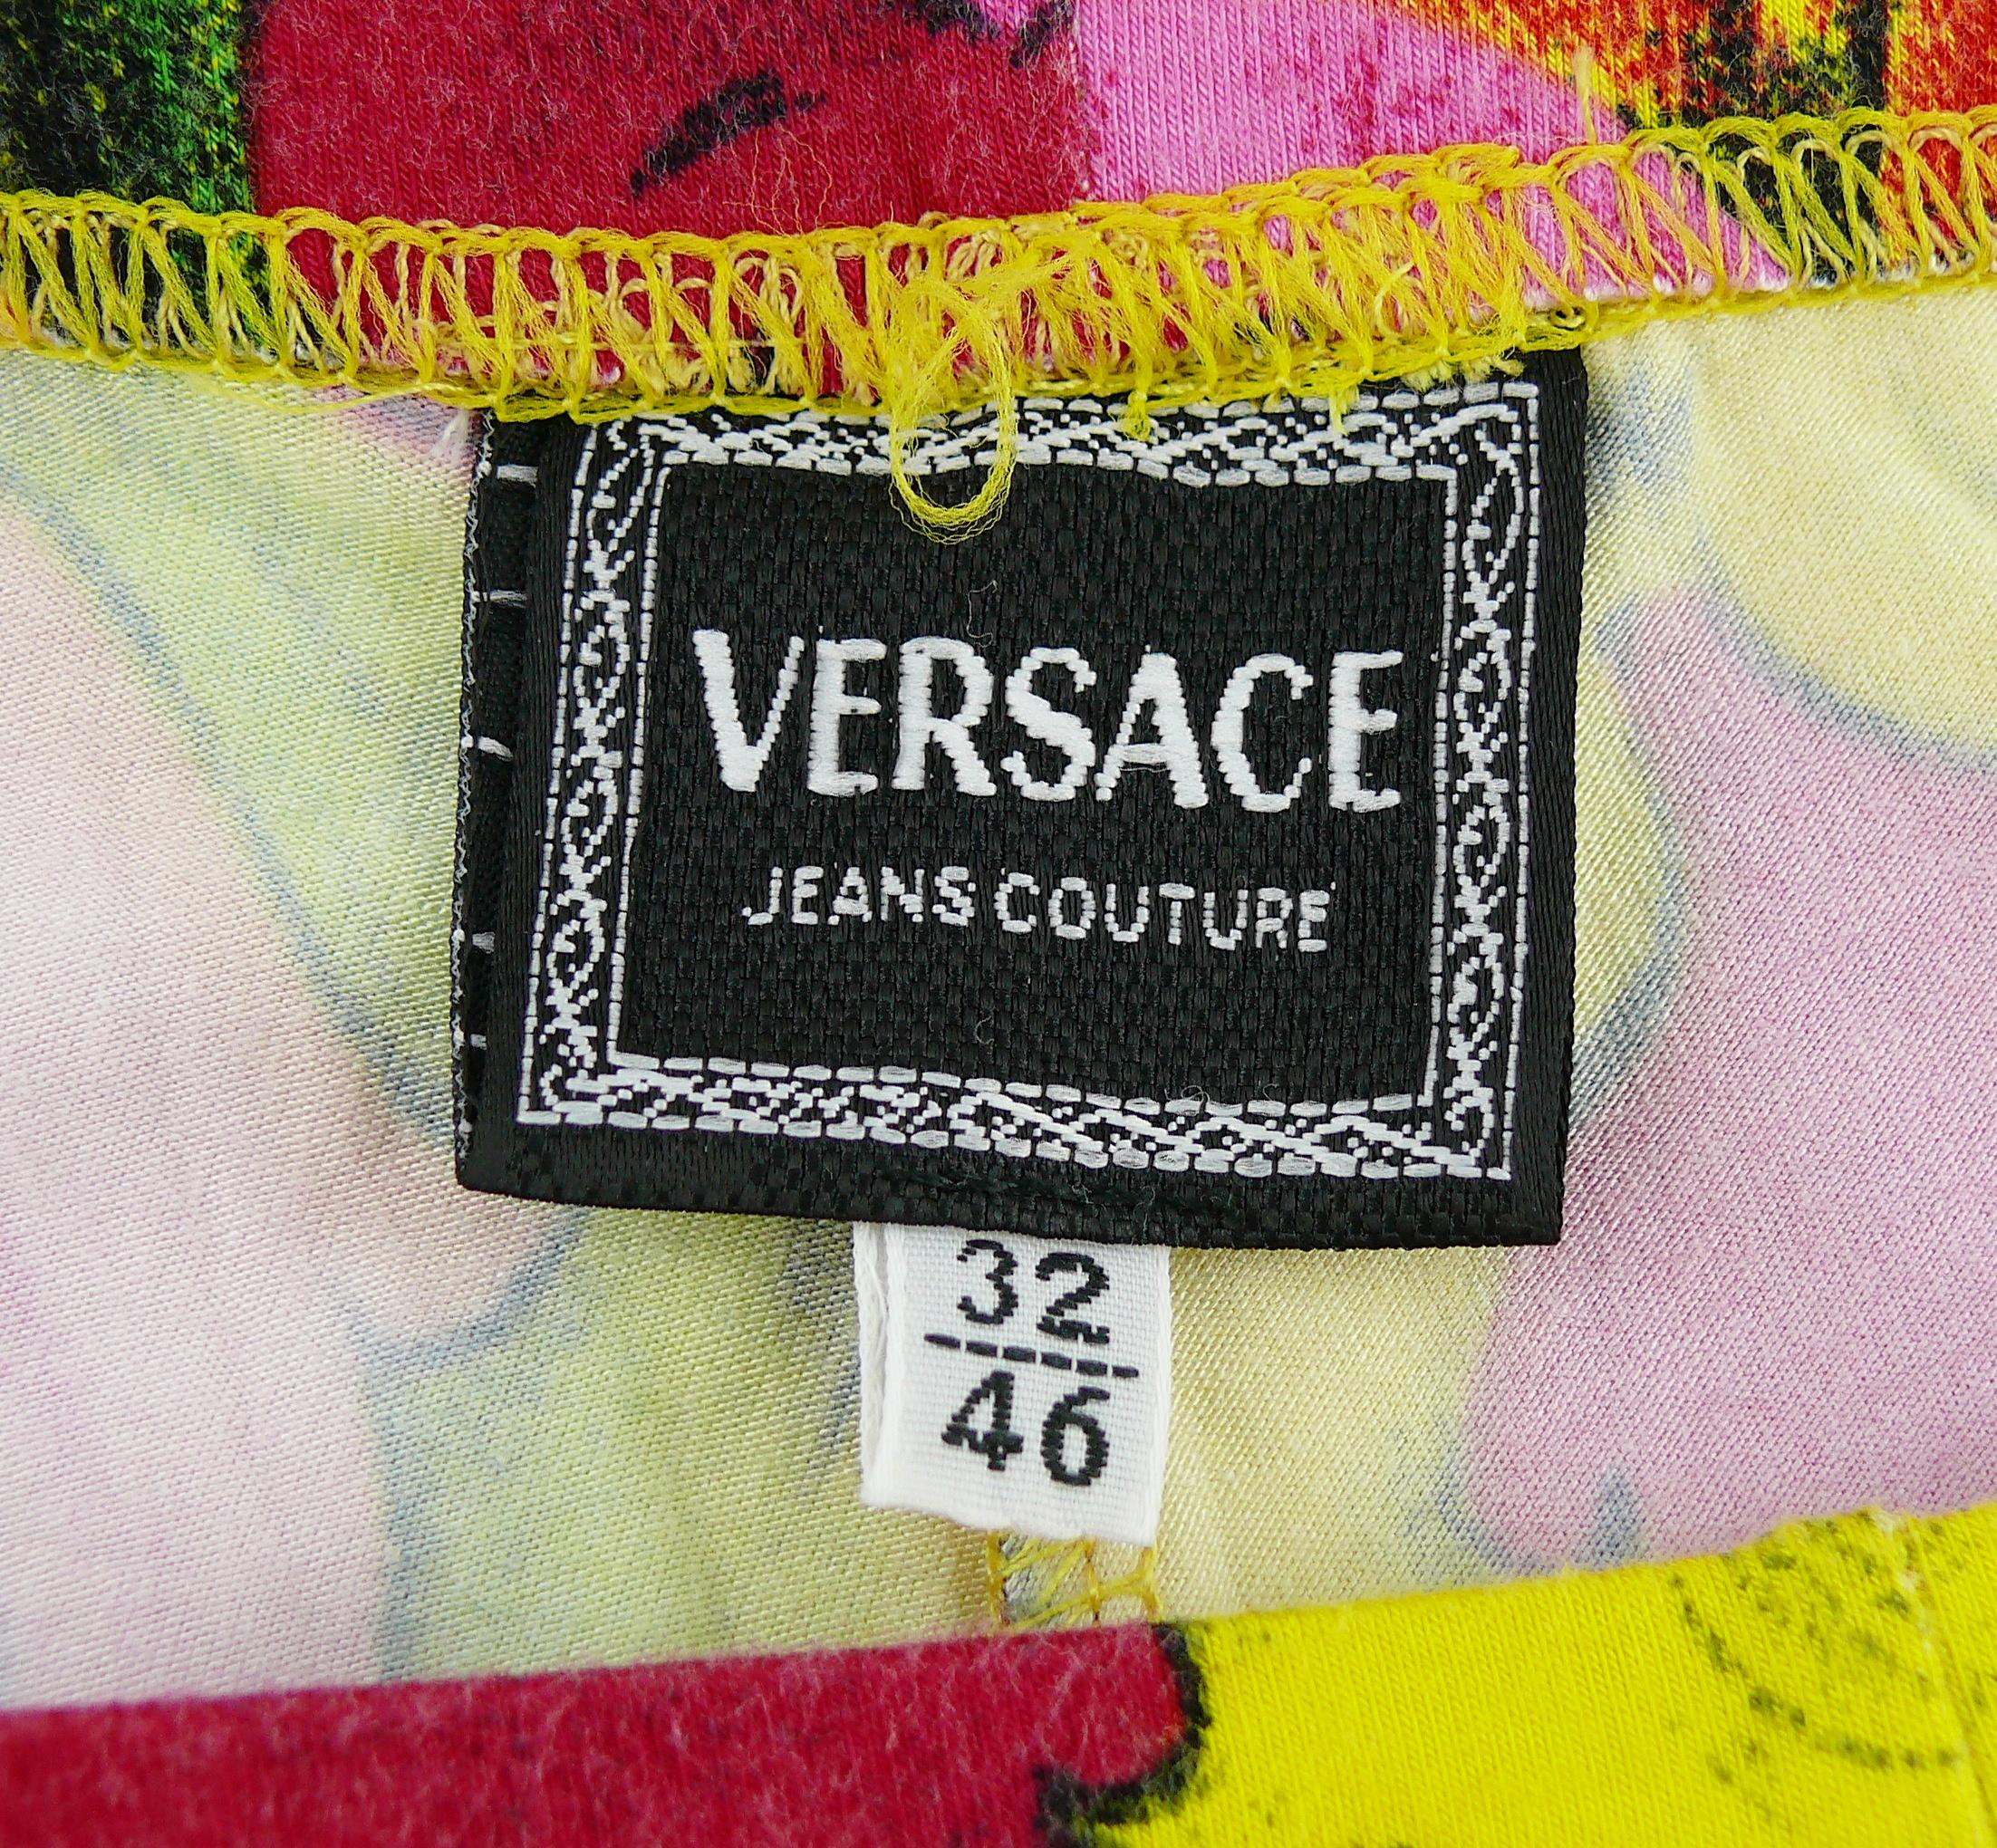 Versace Jeans Couture Vintage Marilyn Monroe Betty Boop Leggings 4